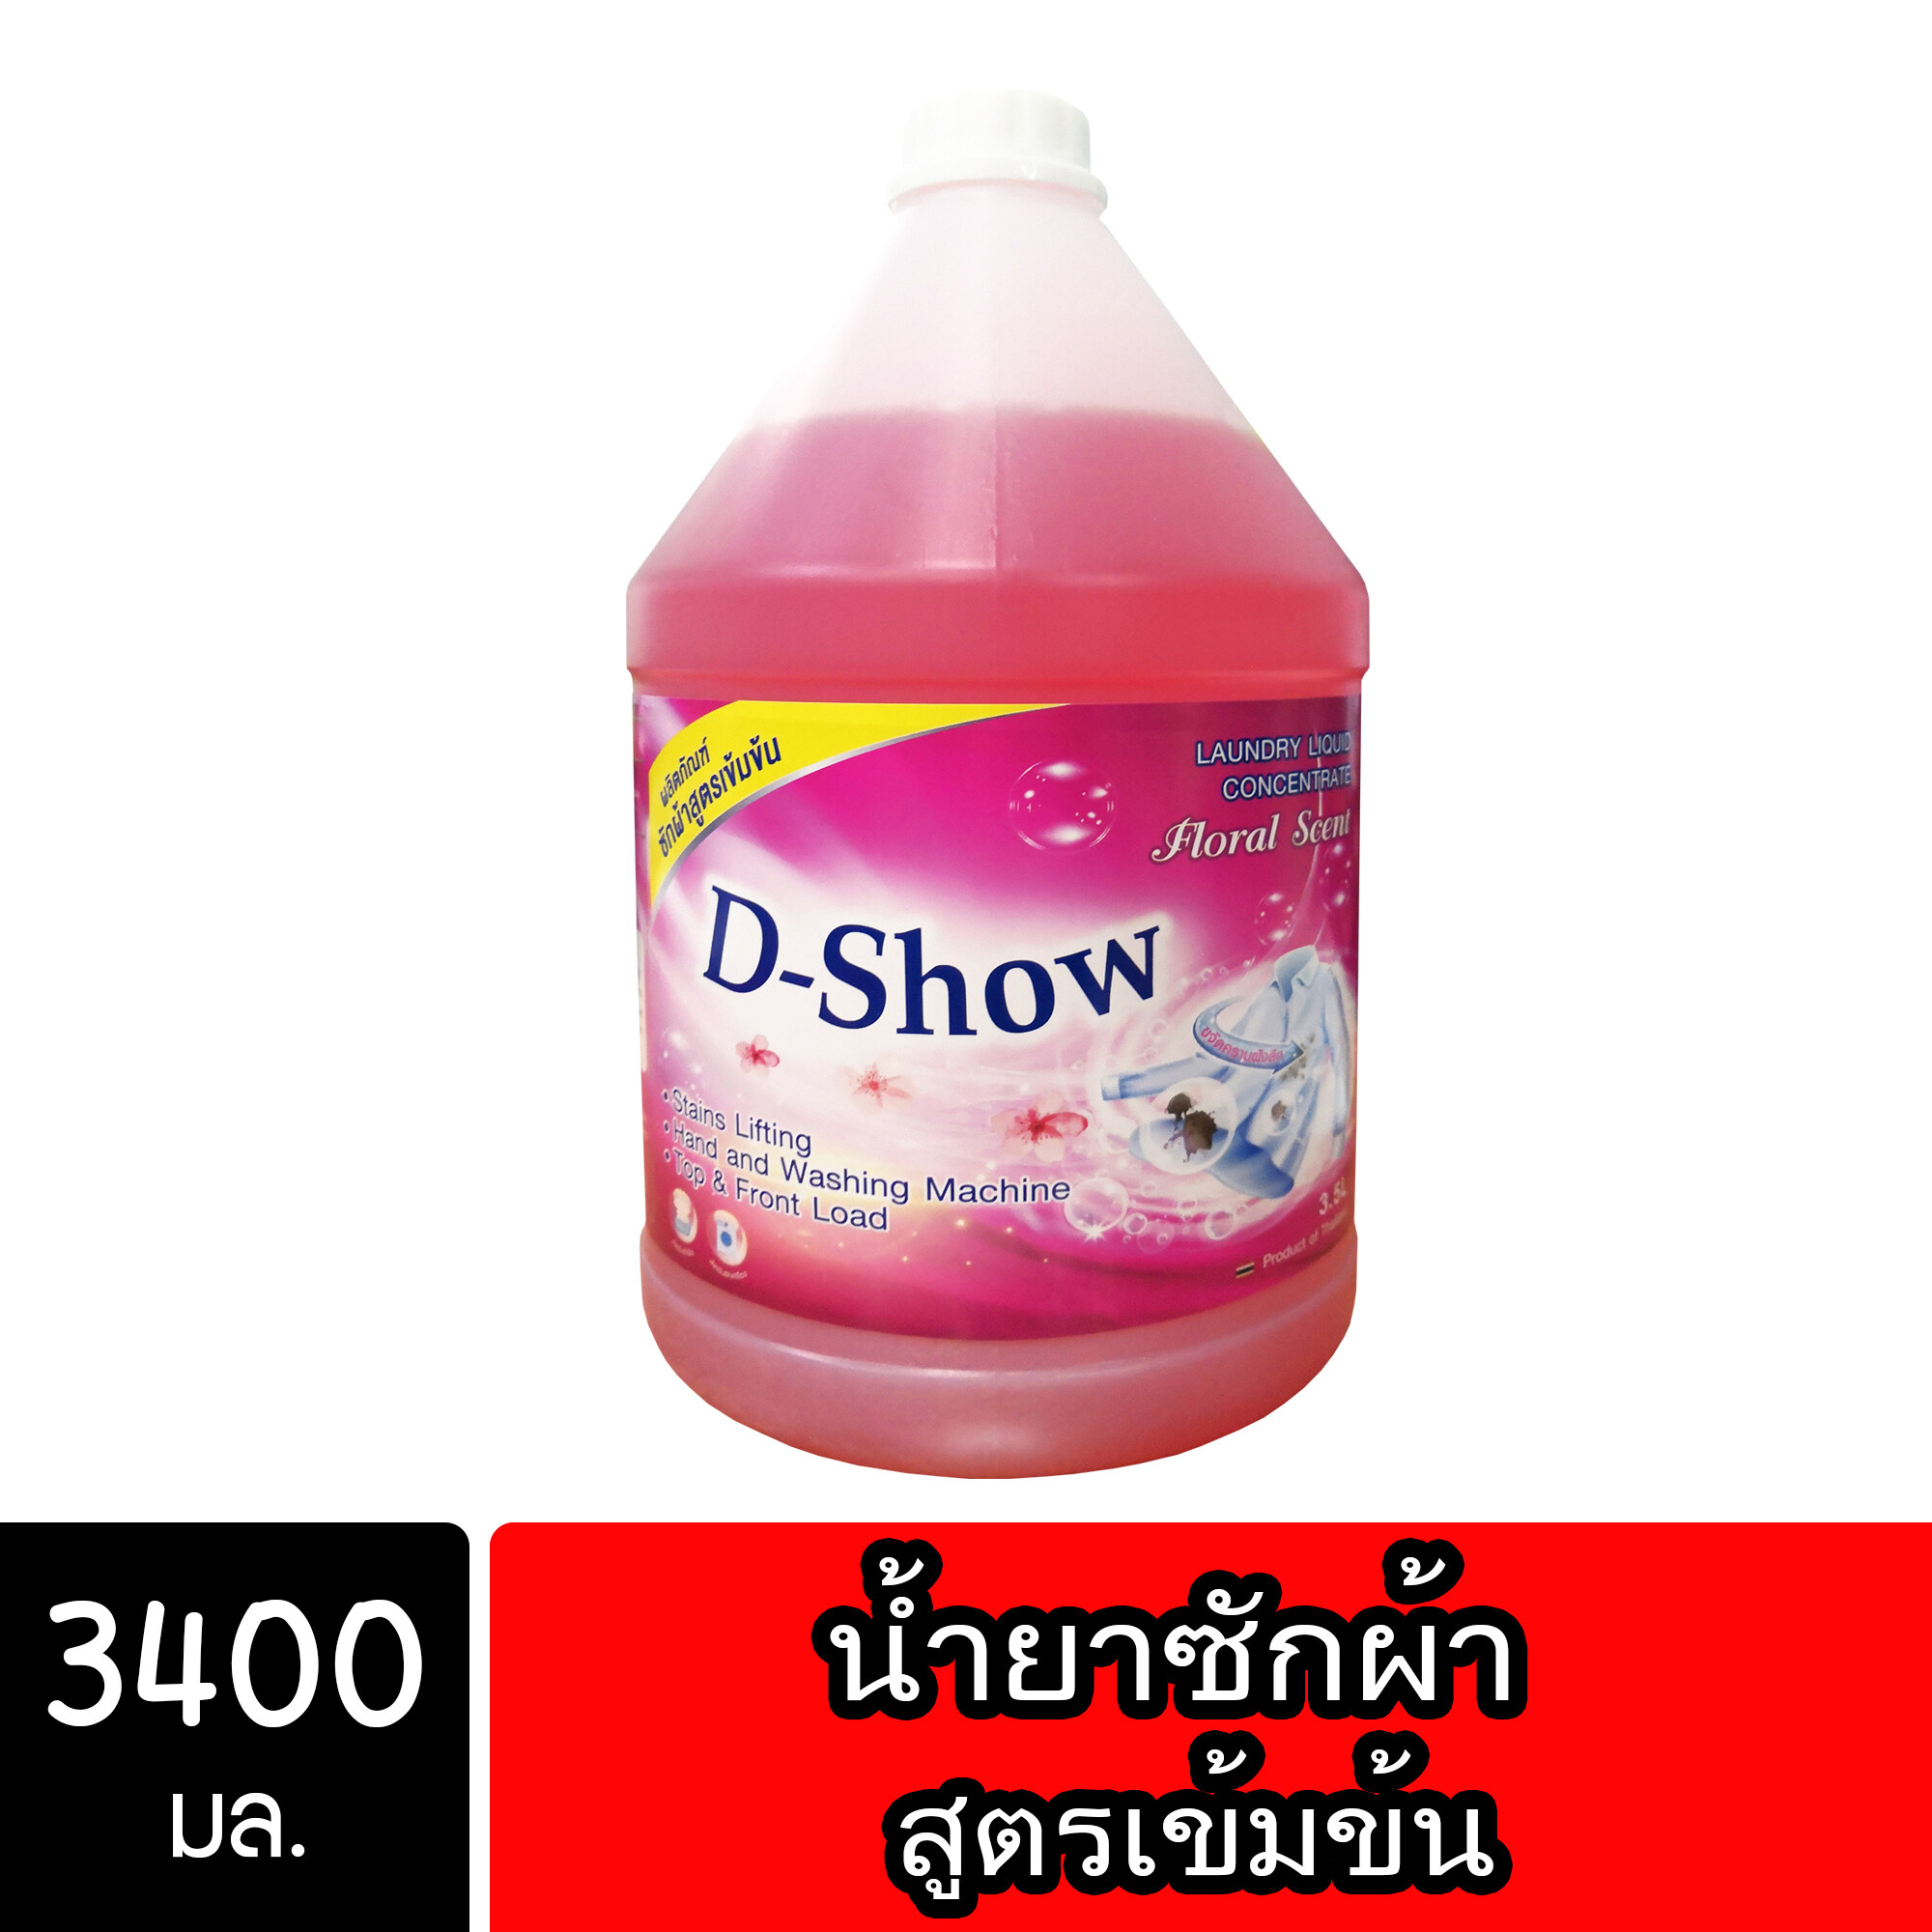 DShow น้ำยาซักผ้า สีแดง ขนาด 3800มล. สูตรลดกลิ่นอับ ตากในที่ร่ม ผงซักฟอกน้ำ( Laundry Detergent )